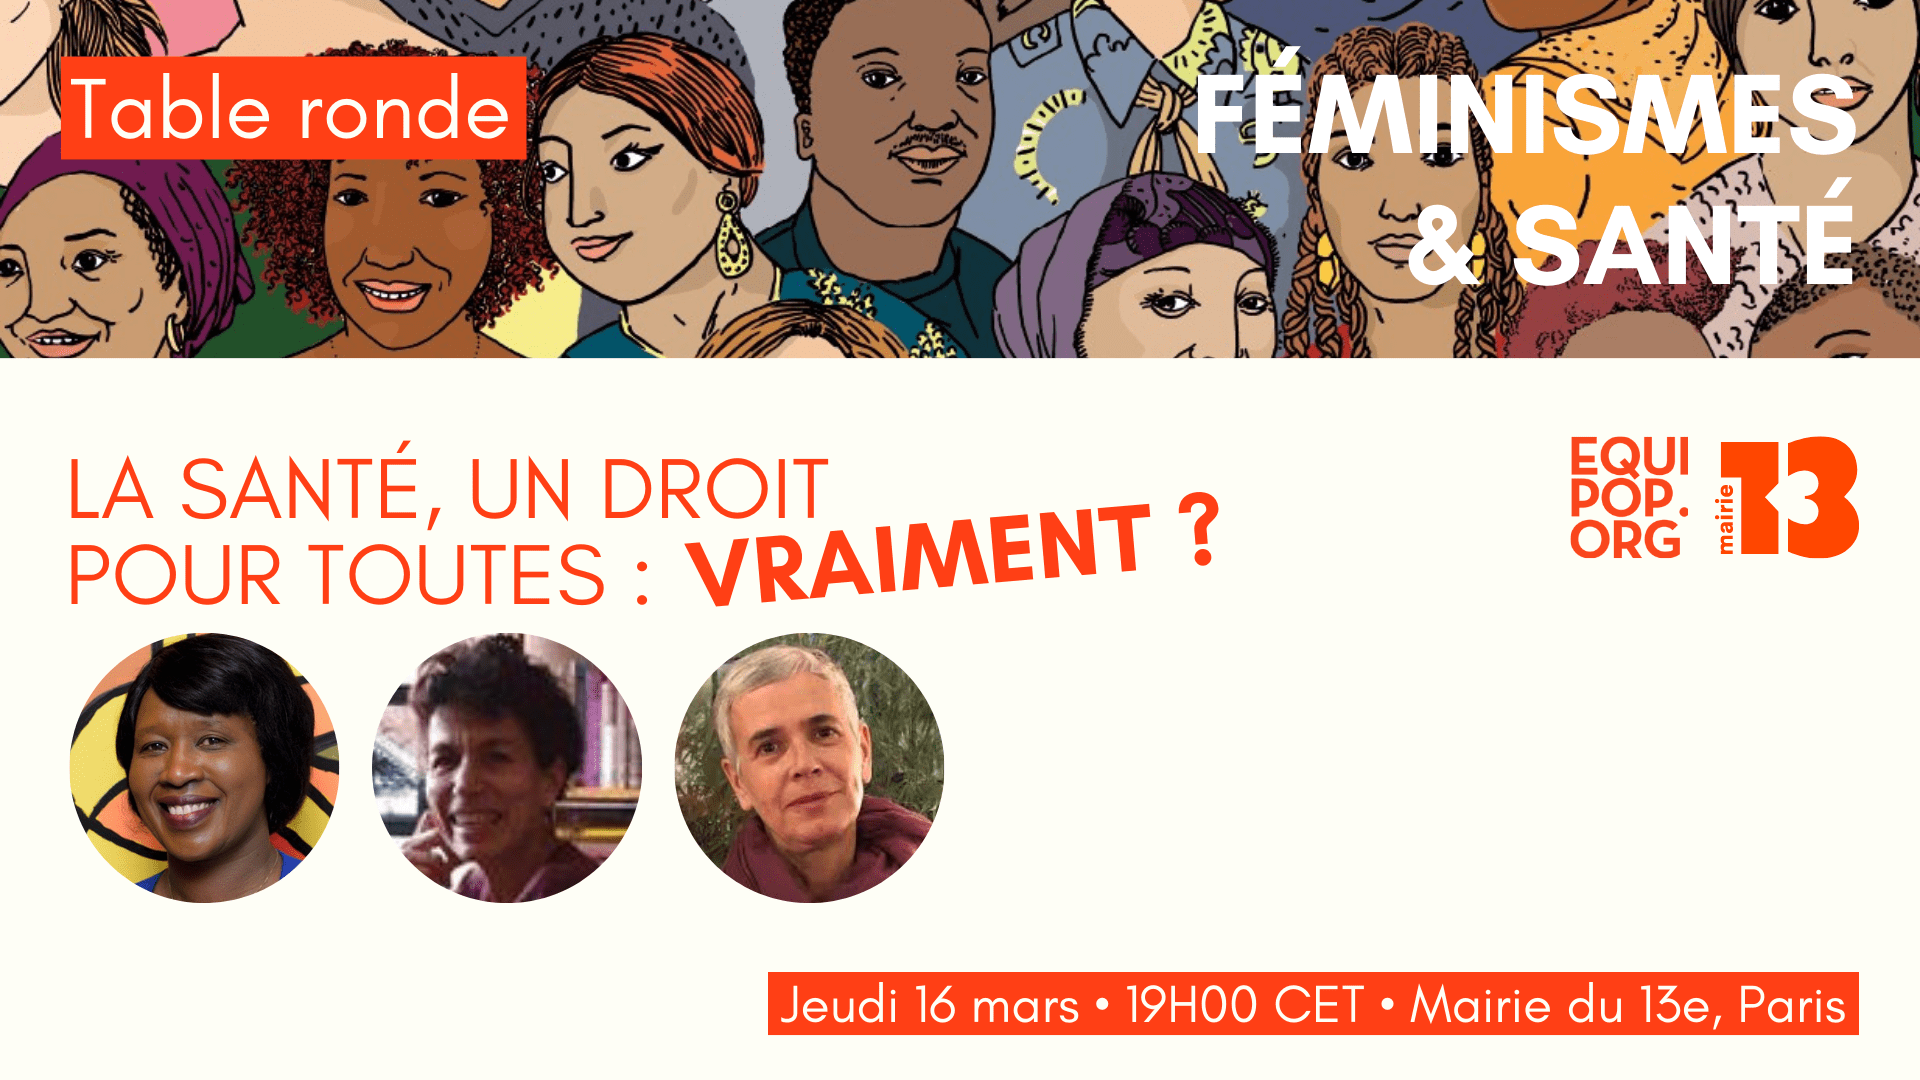 Twitter - Féminismes et Santé (9)